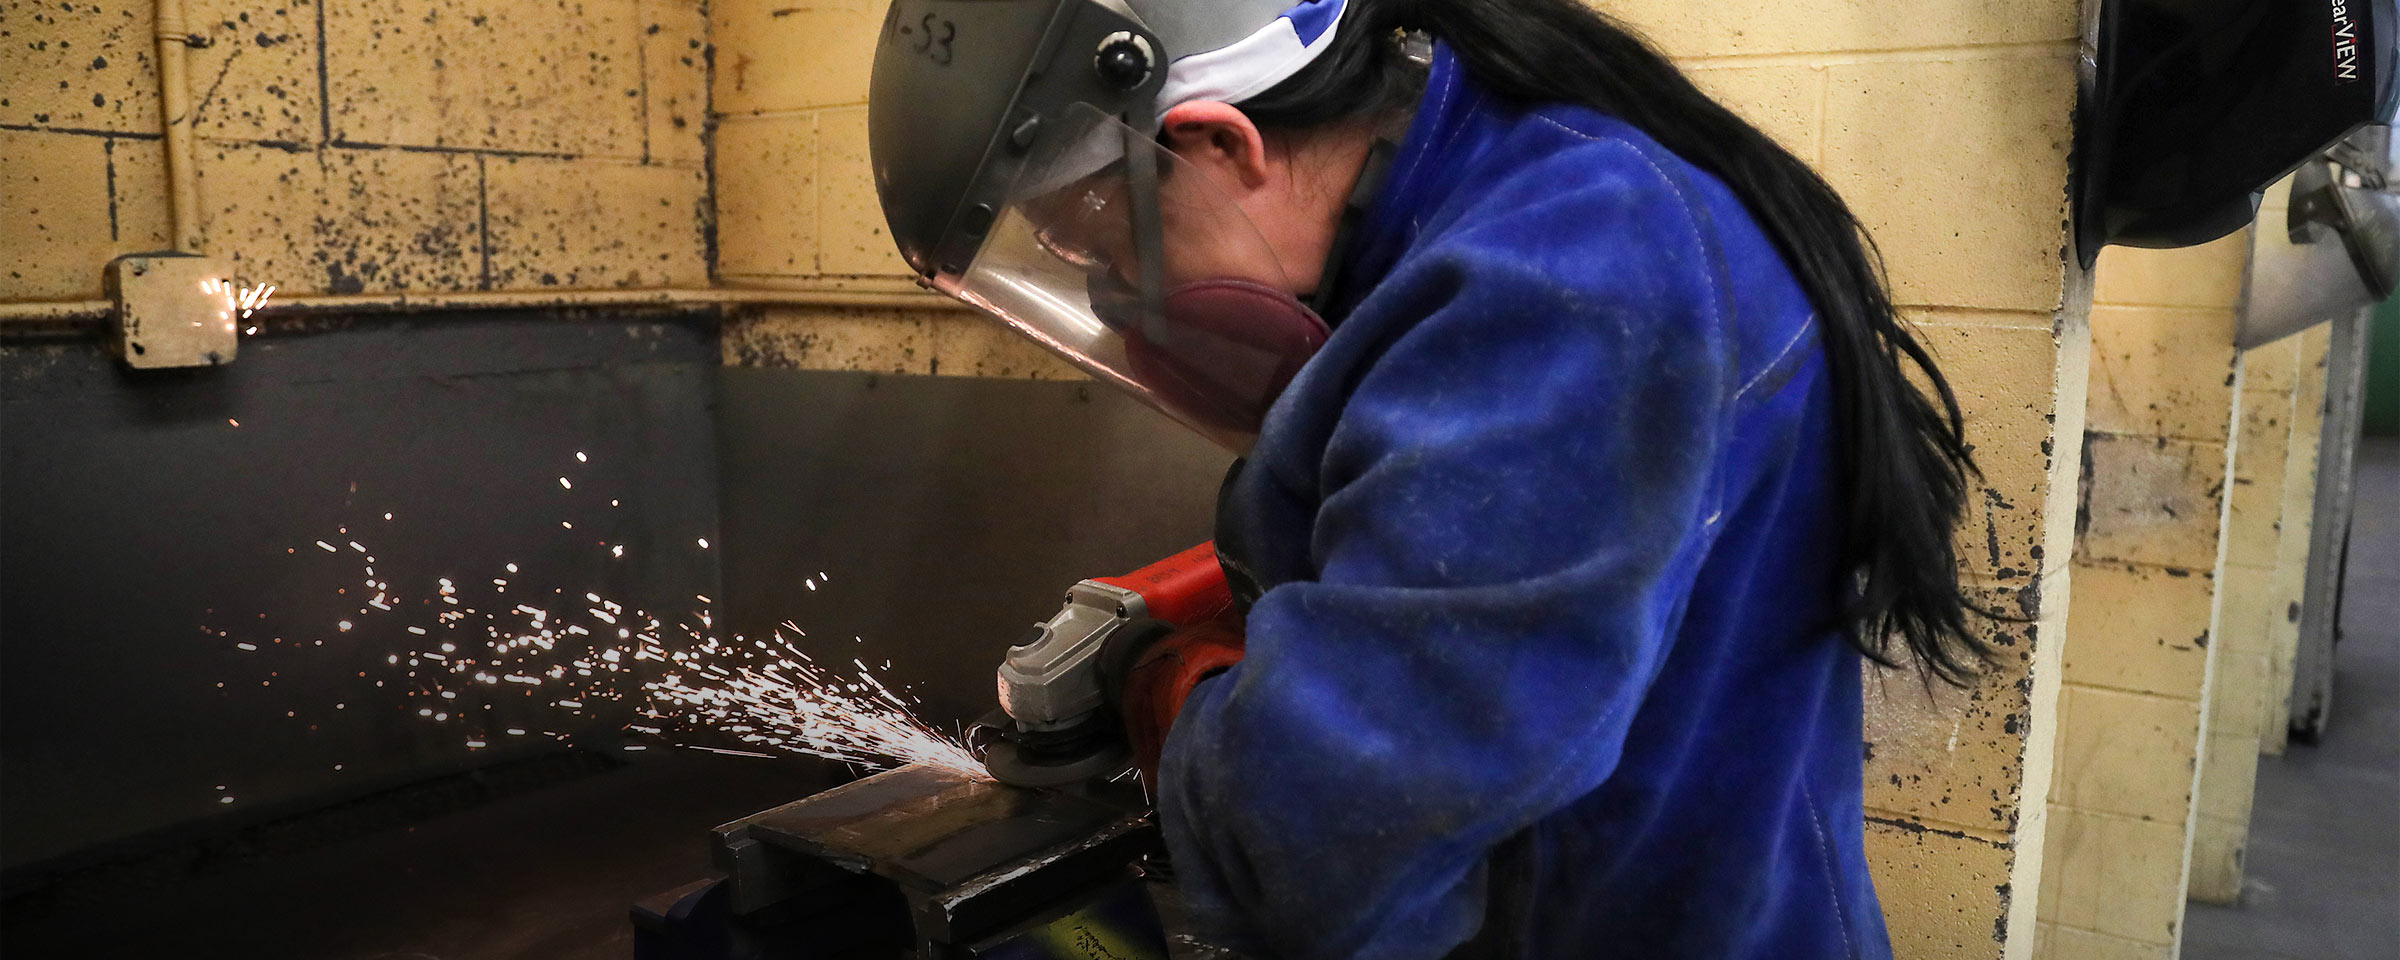 Person welding in welding shop